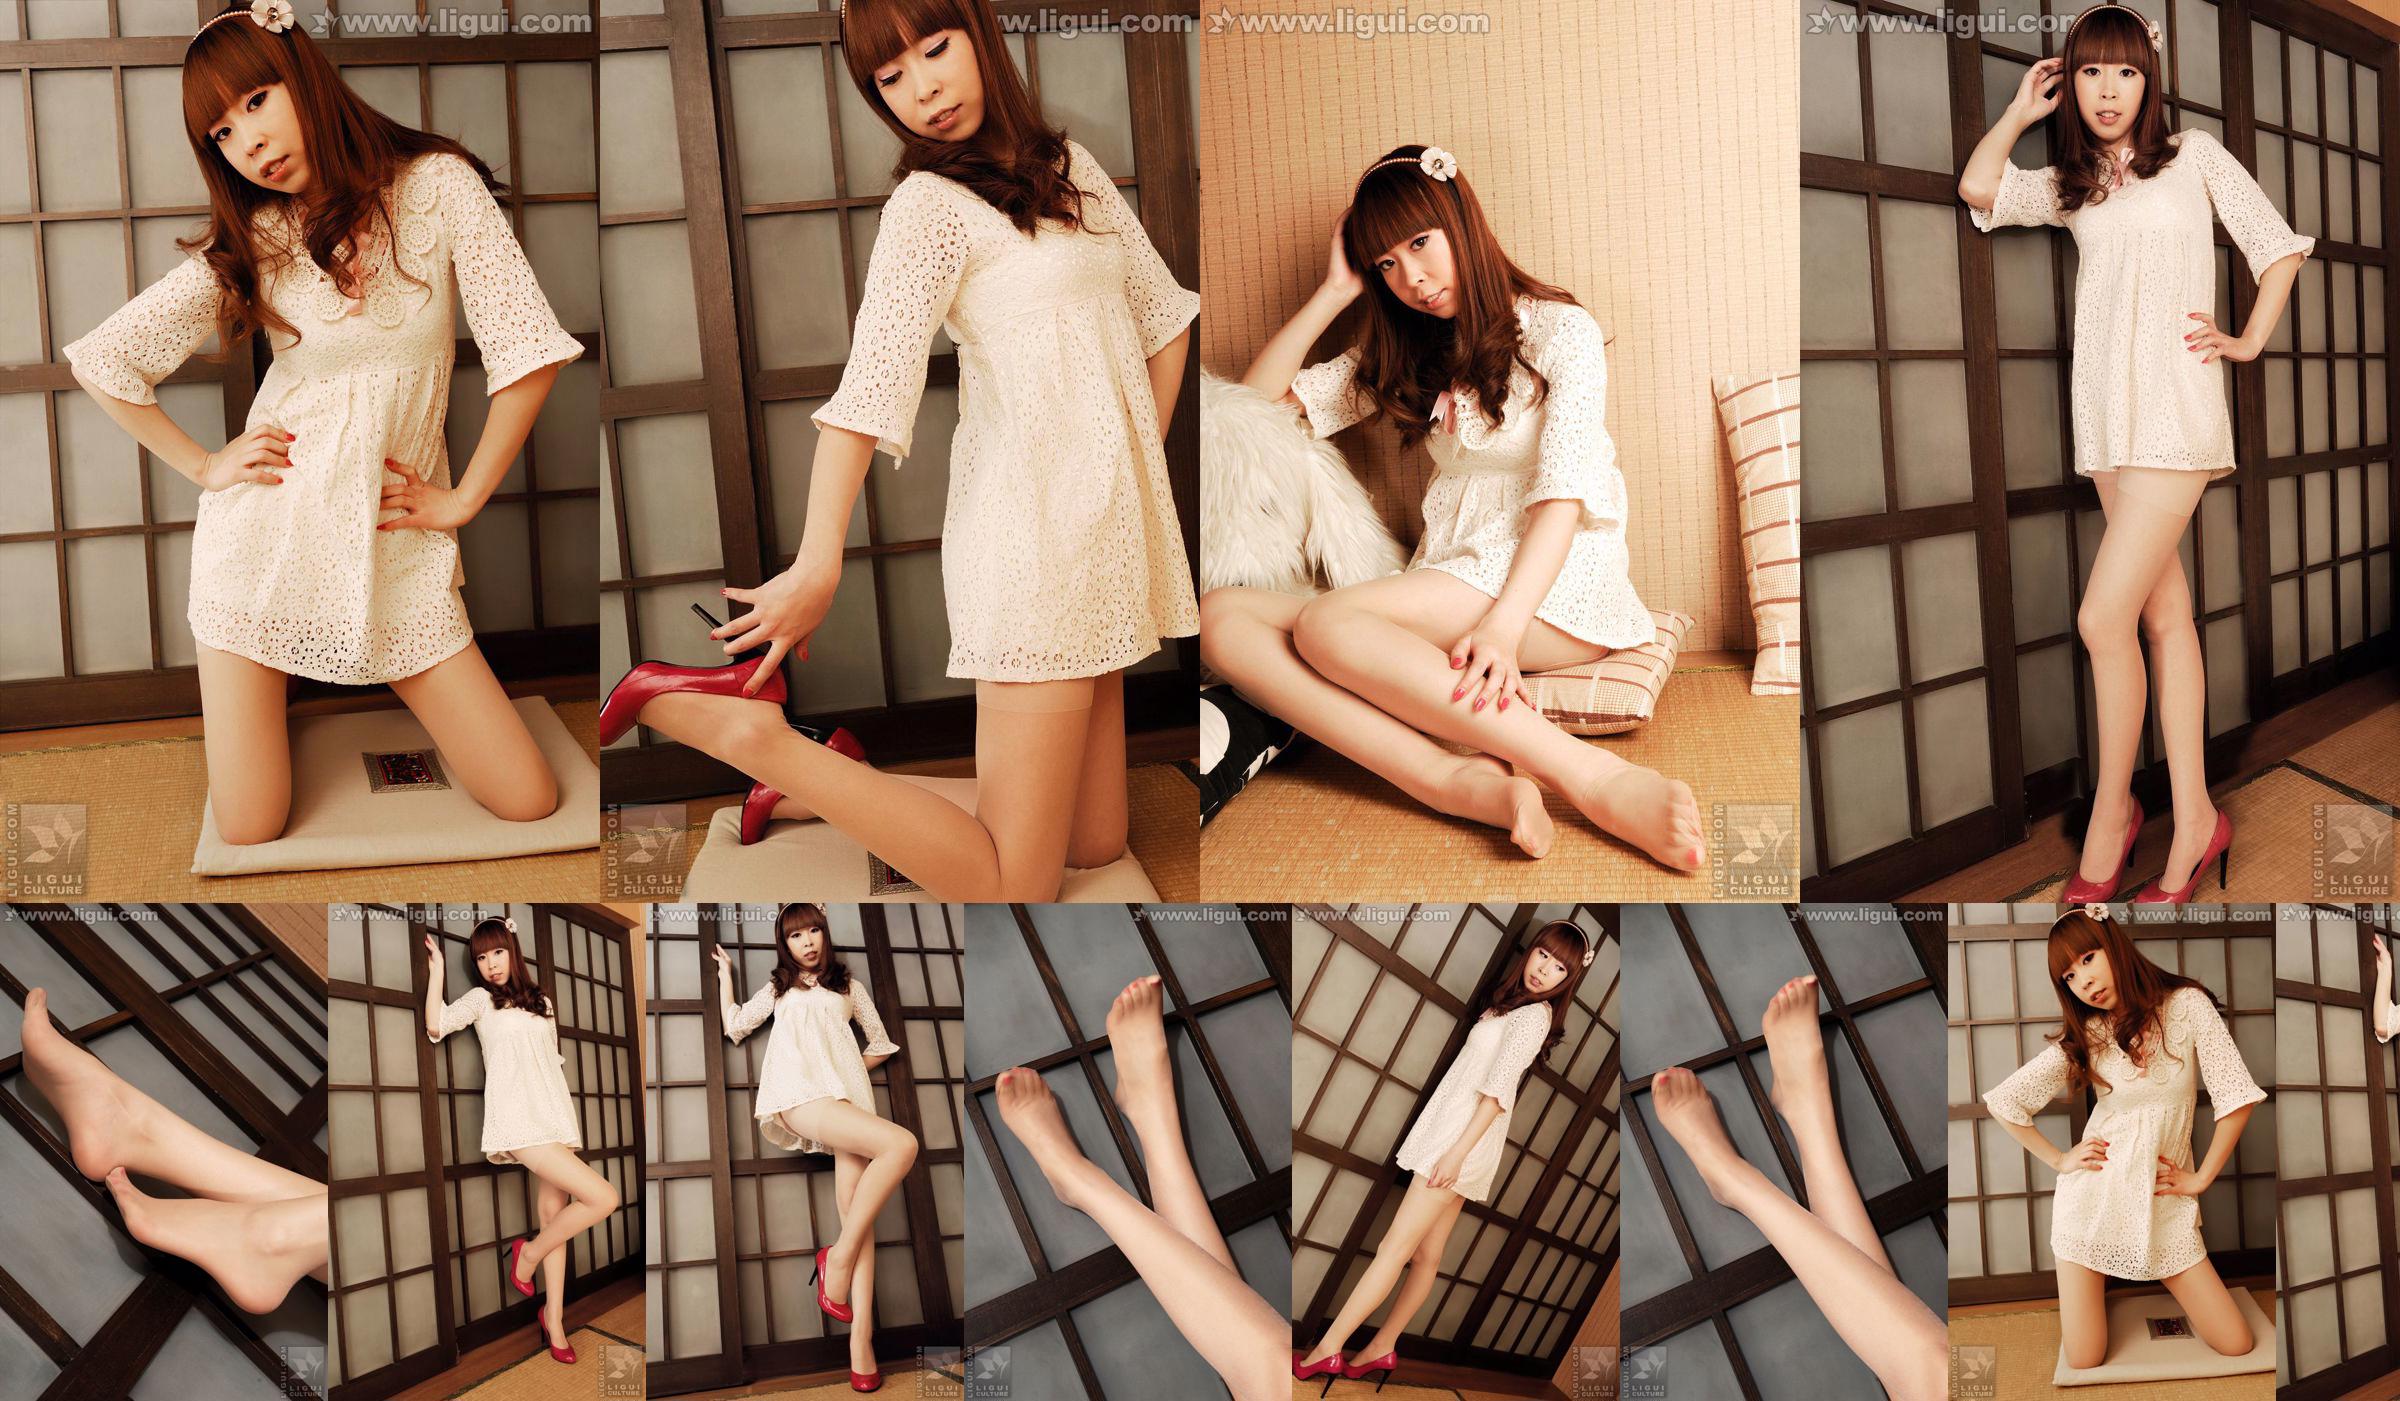 Modelo Vikcy "La tentación del estilo japonés" [丽 柜 LiGui] Fotos de piernas hermosas y pie de jade No.cd990e Página 1